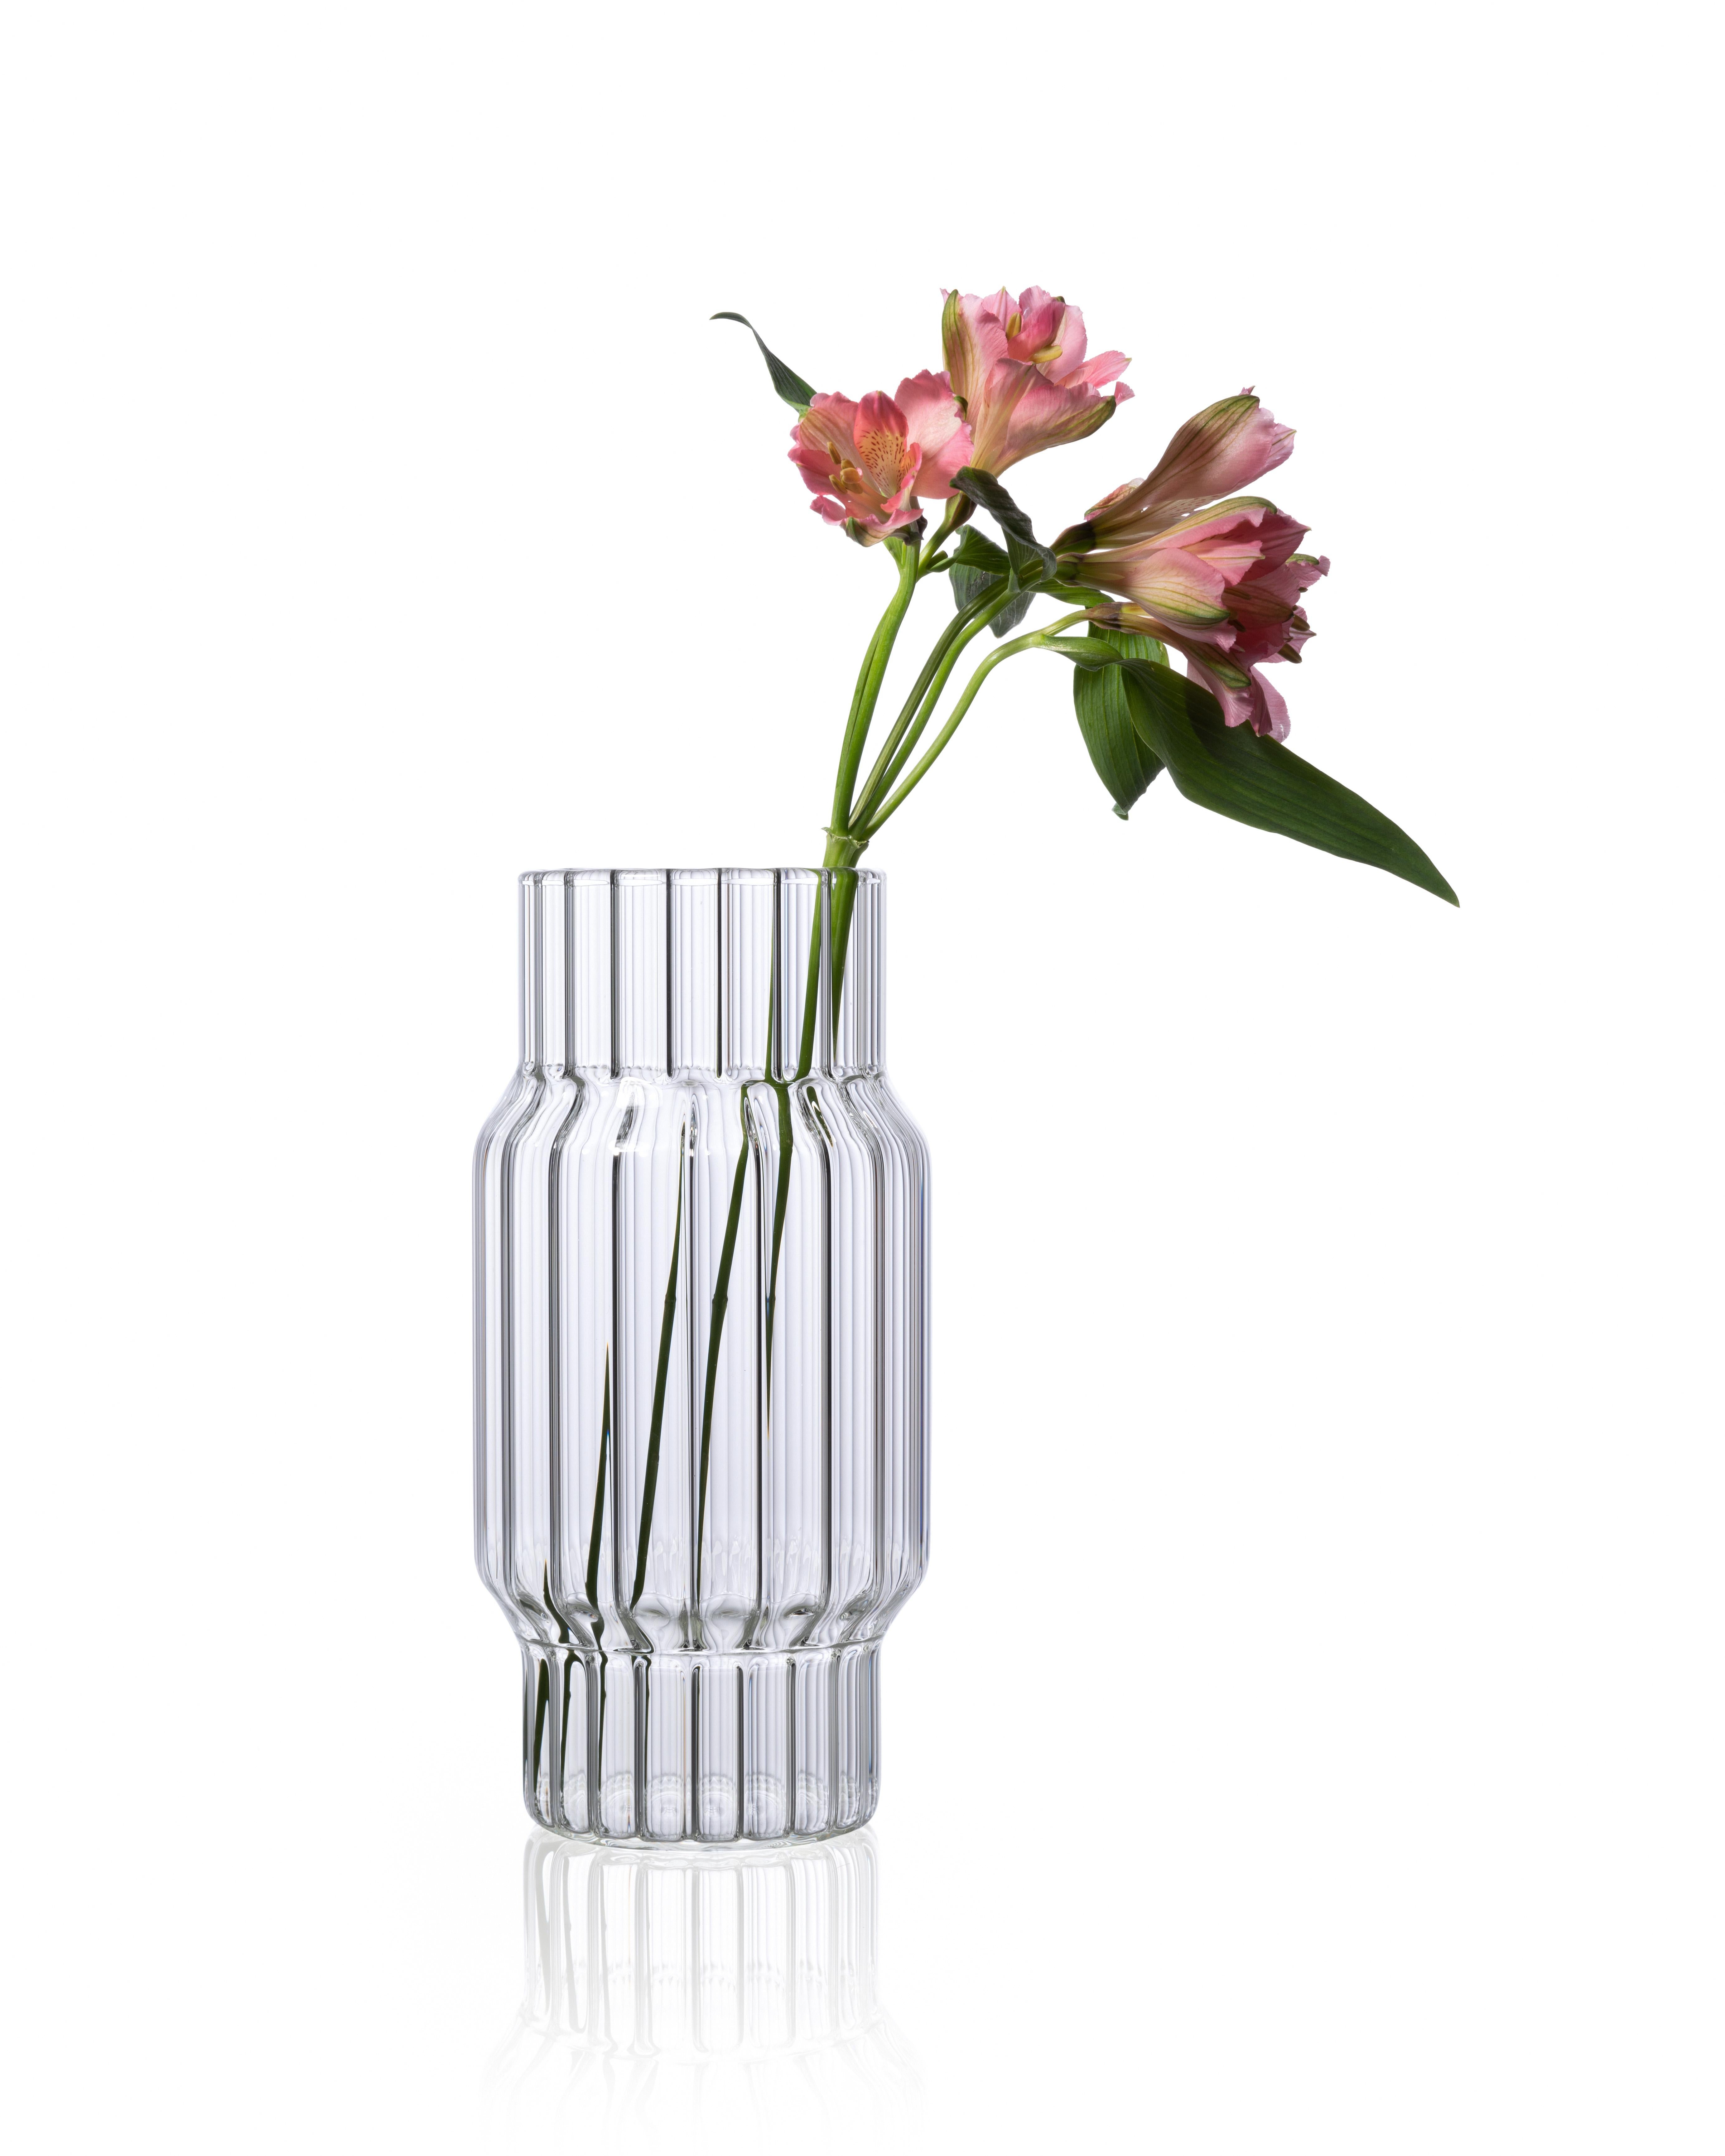 ALBANY GROSSE VASE

Die Albany-Vase kehrt die Tradition um, indem sie auf der Innenseite mit komplizierten Rillen versehen ist. Die starken architektonischen Linien sind eine Übung in Materialstudien und Produktionstechniken. Die Facetten werden